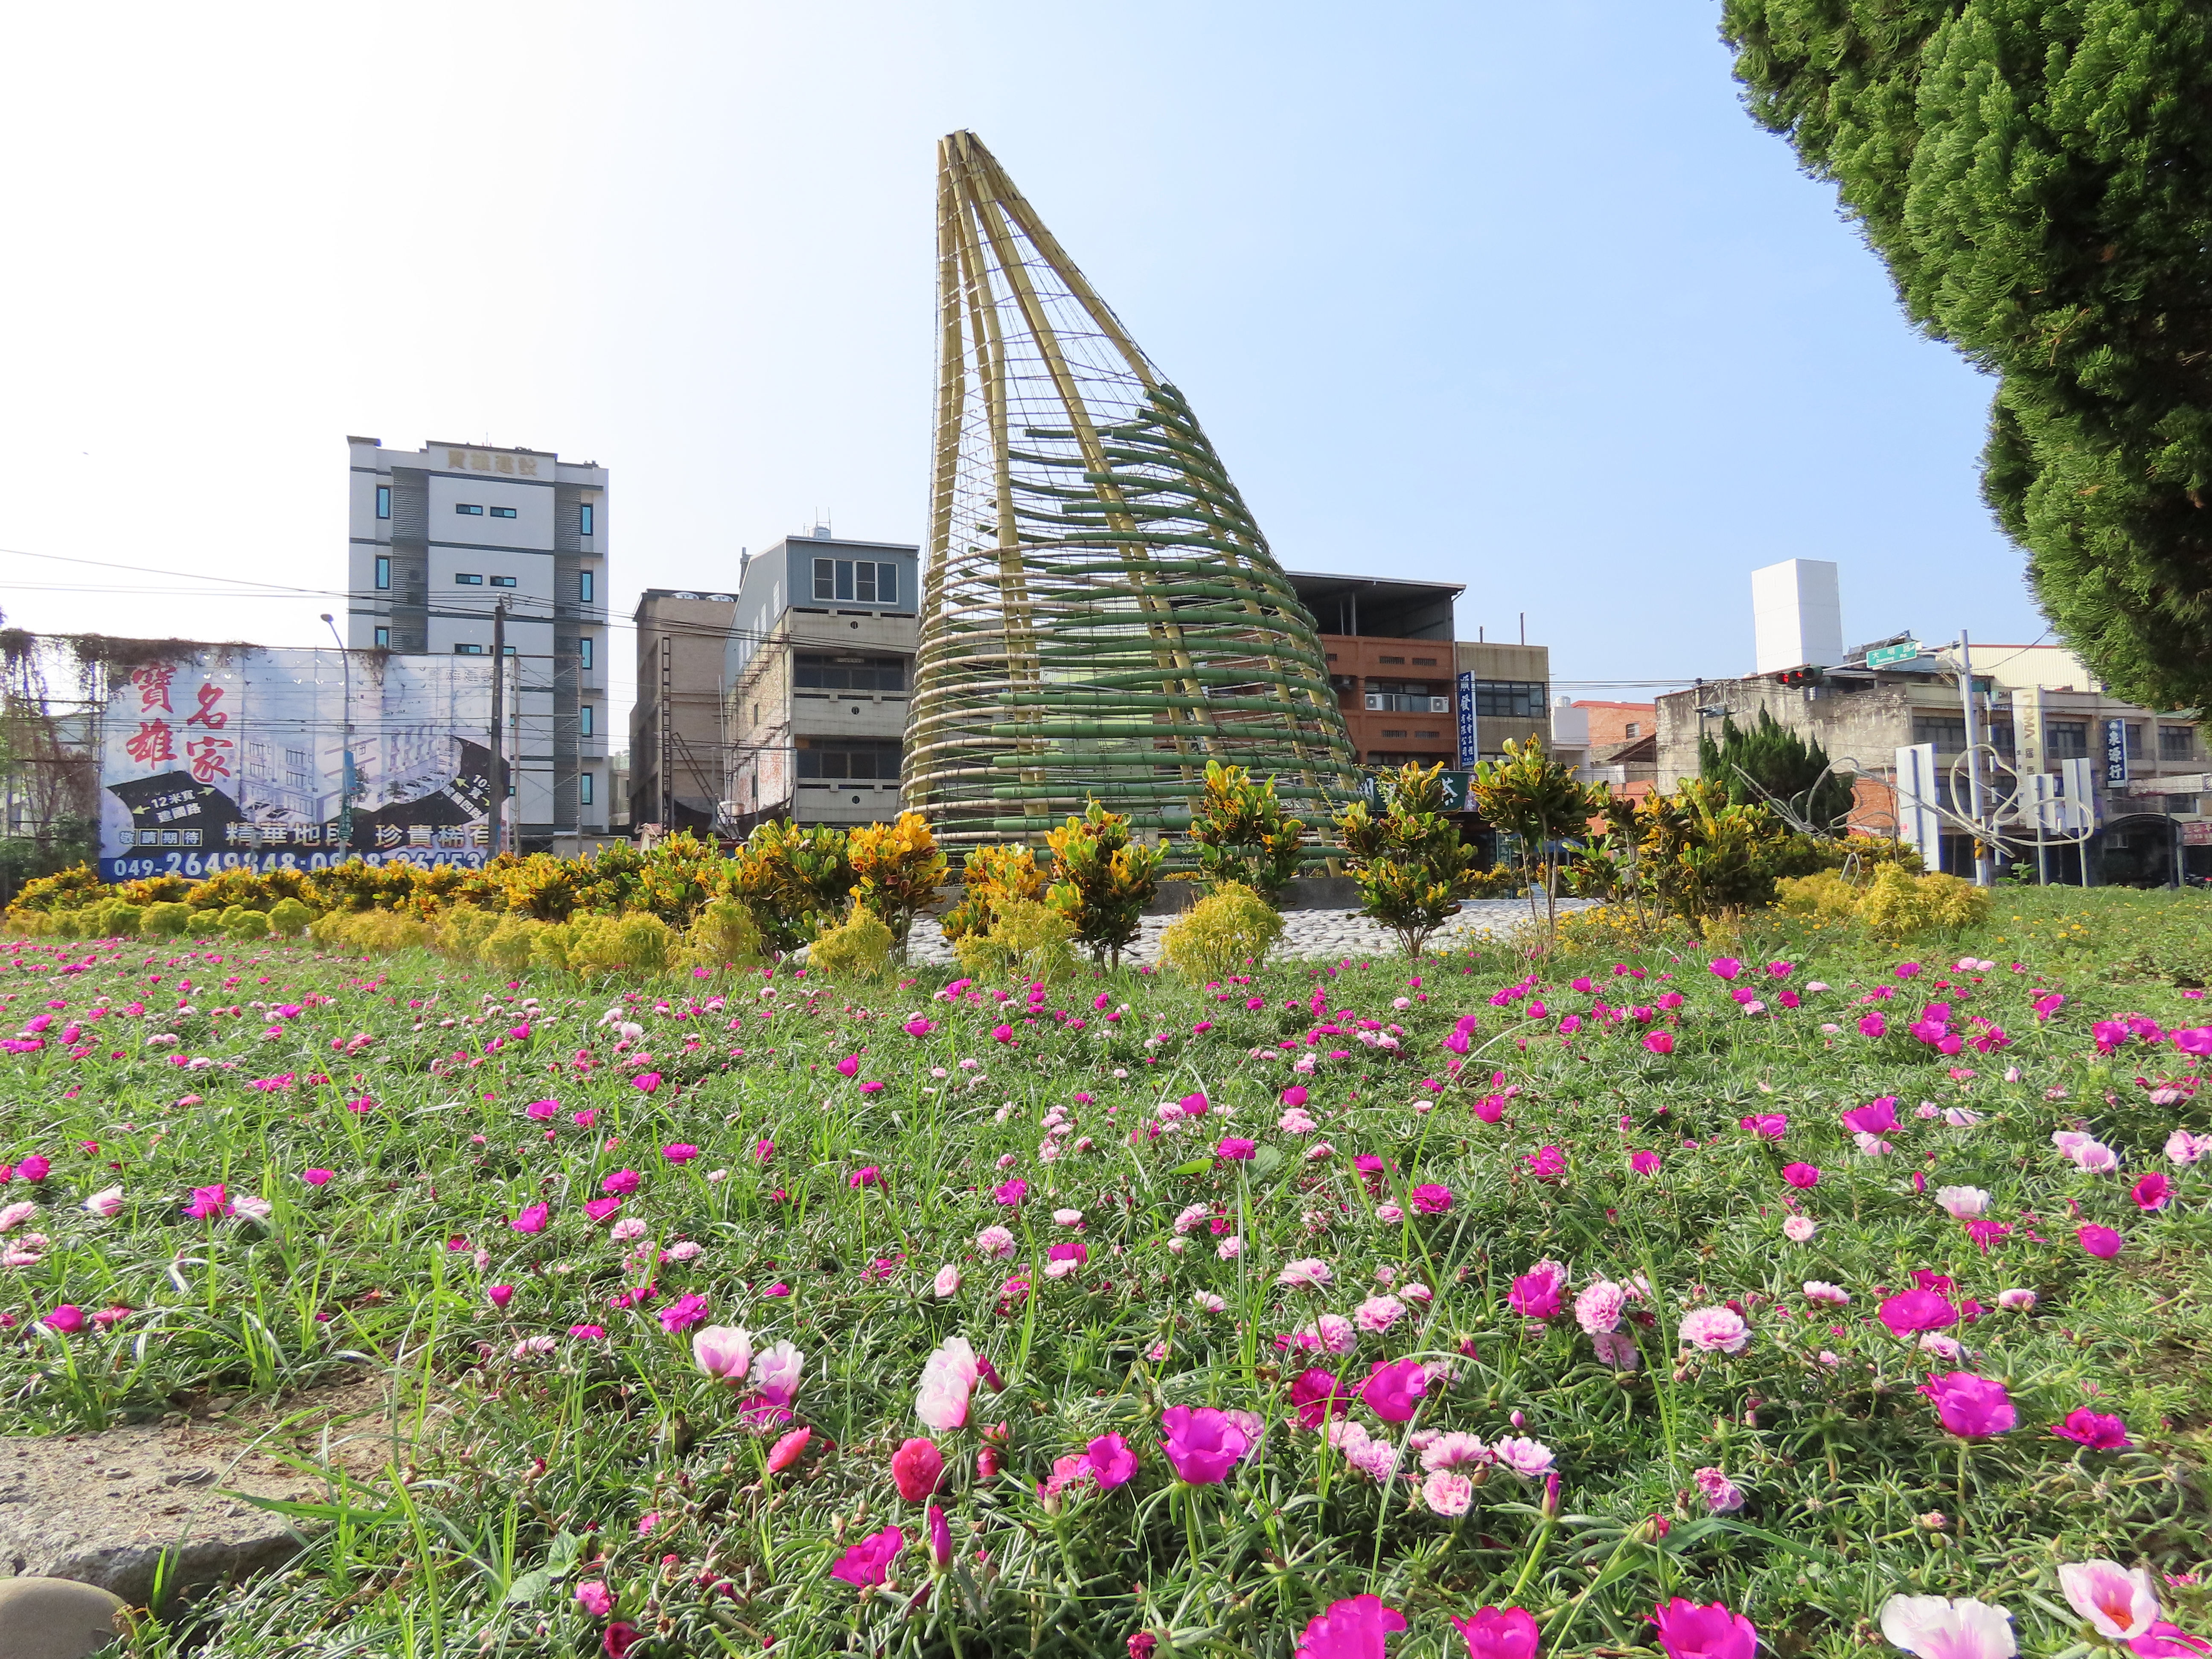 遊客服務中心對面之圓環是竹筍造型的竹藝品和花圃綠地